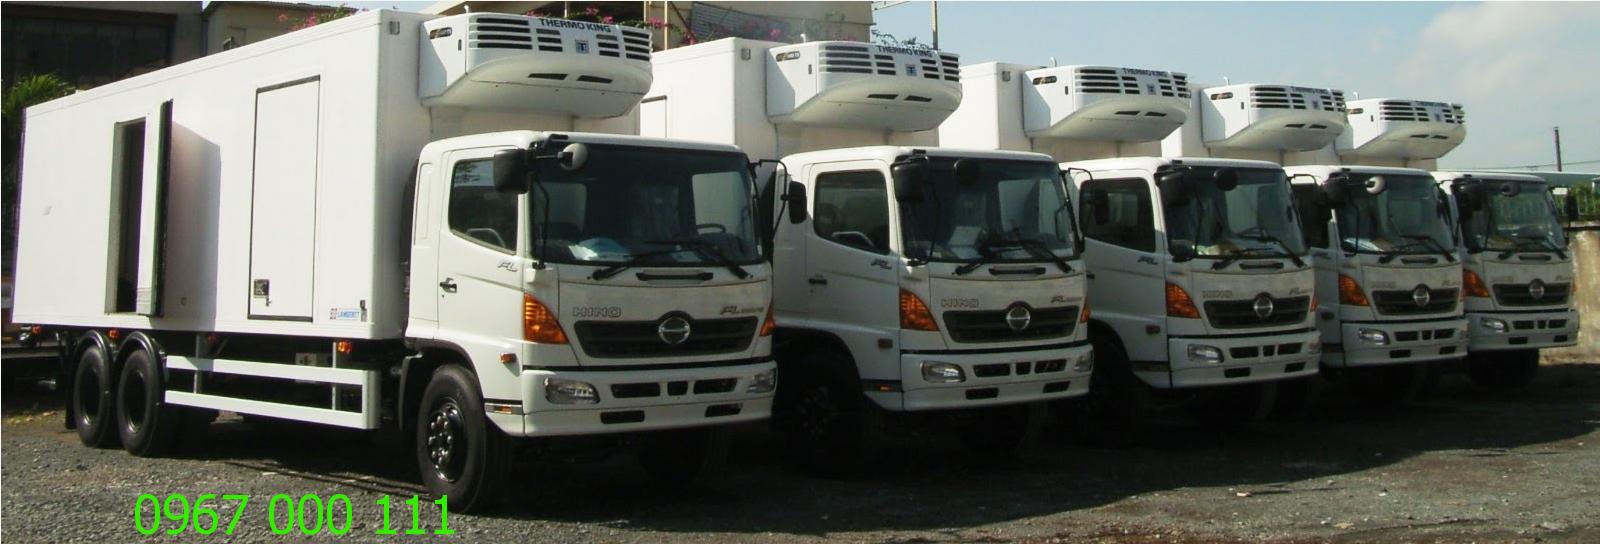 Mở rộng dịch vụ cho thuê xe tải chở hàng ở Huế của Thần Đèn